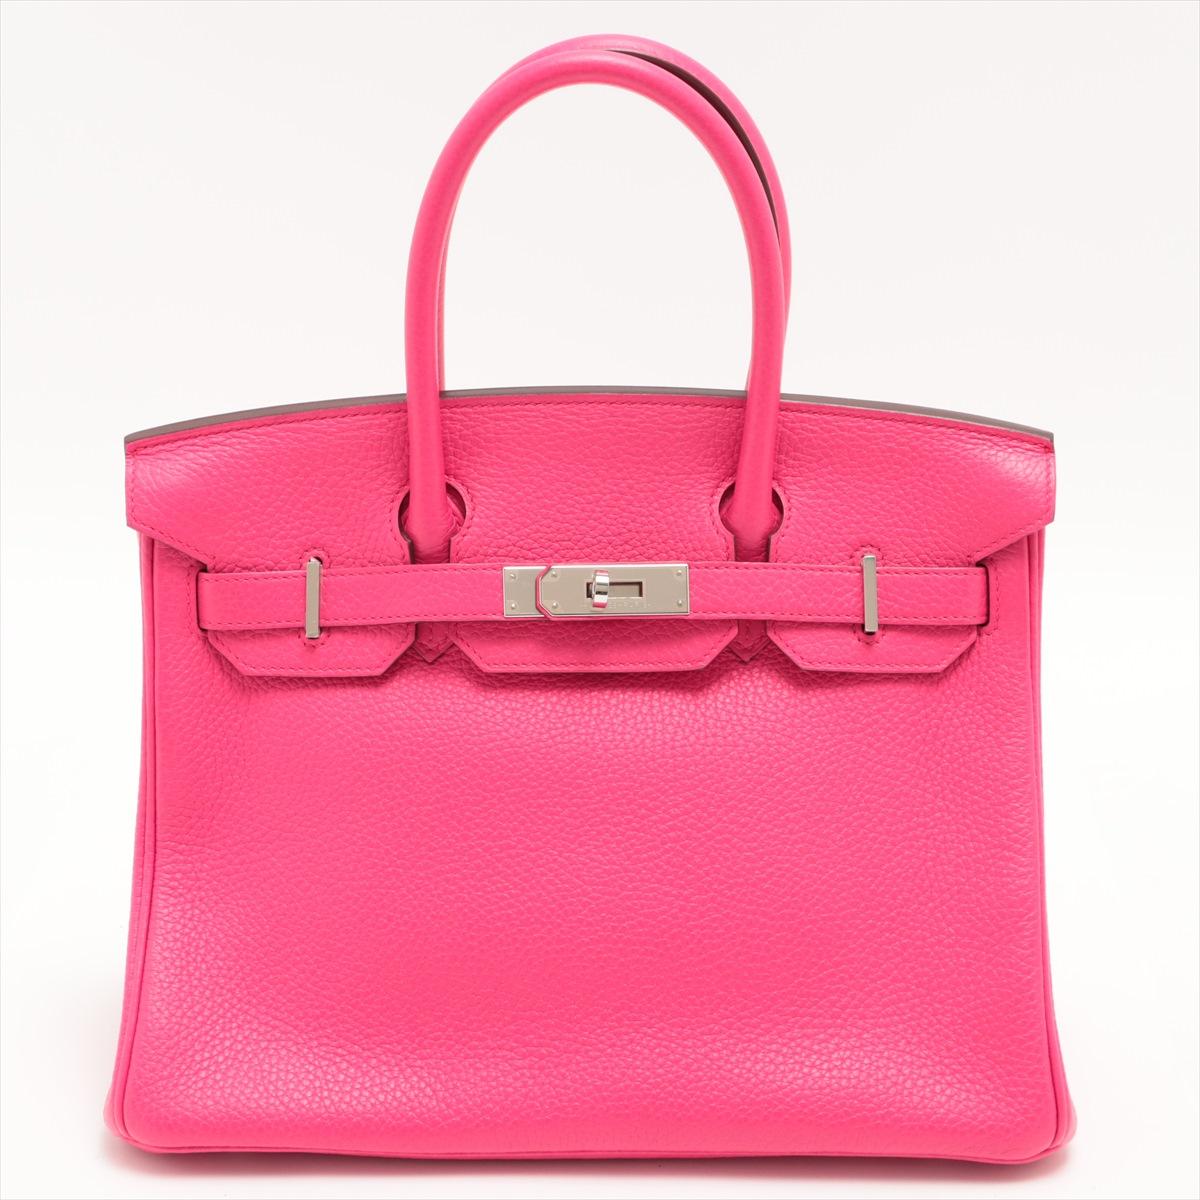 Le Birkin 30 Taurillon Clemence d'Hermès en rose est l'incarnation du luxe et de l'élégance. Fabriqué avec le plus grand soin et l'attention portée aux détails, le sac à main emblématique est un symbole de sophistication et de style intemporel.